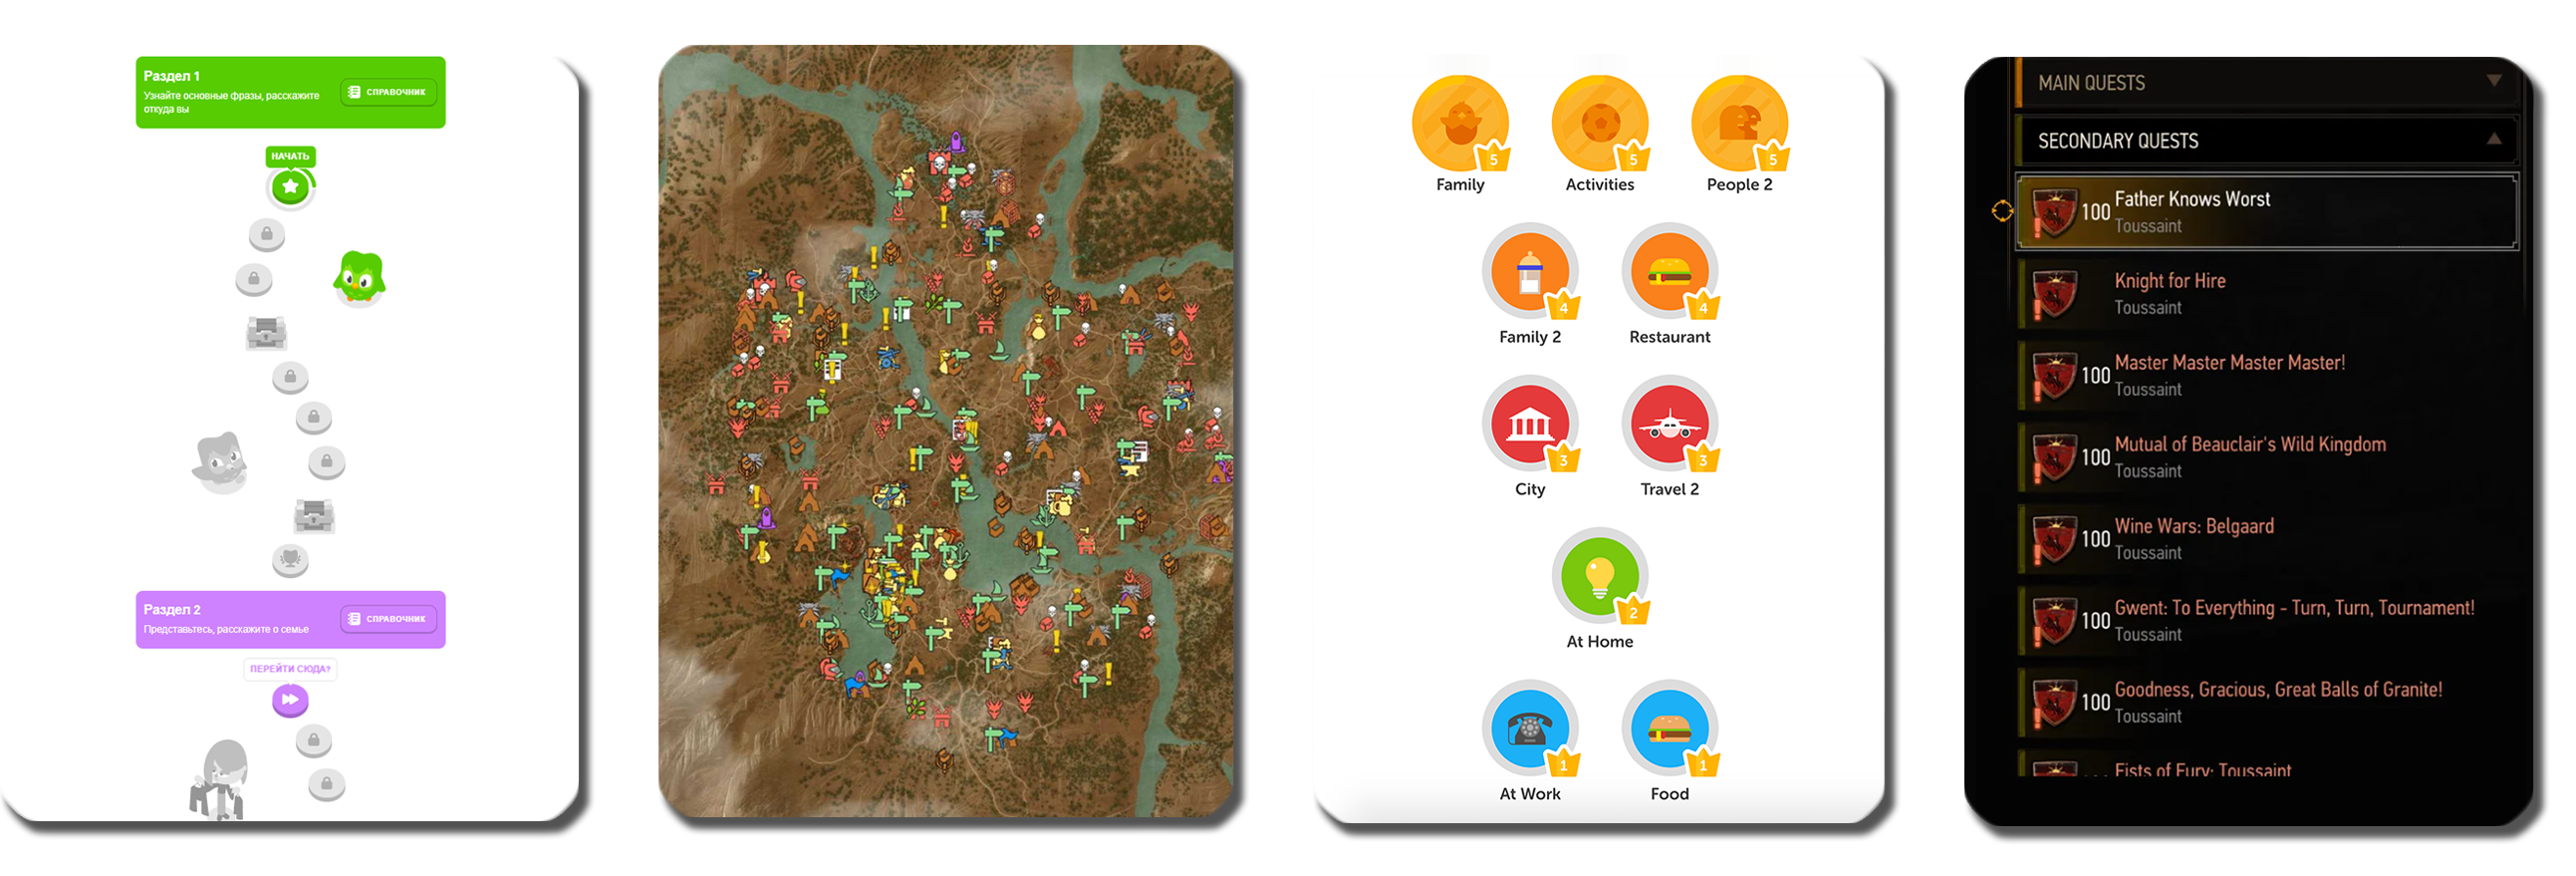  Сюжетная карта и доступные квесты в Duolingo и Ведьмаке